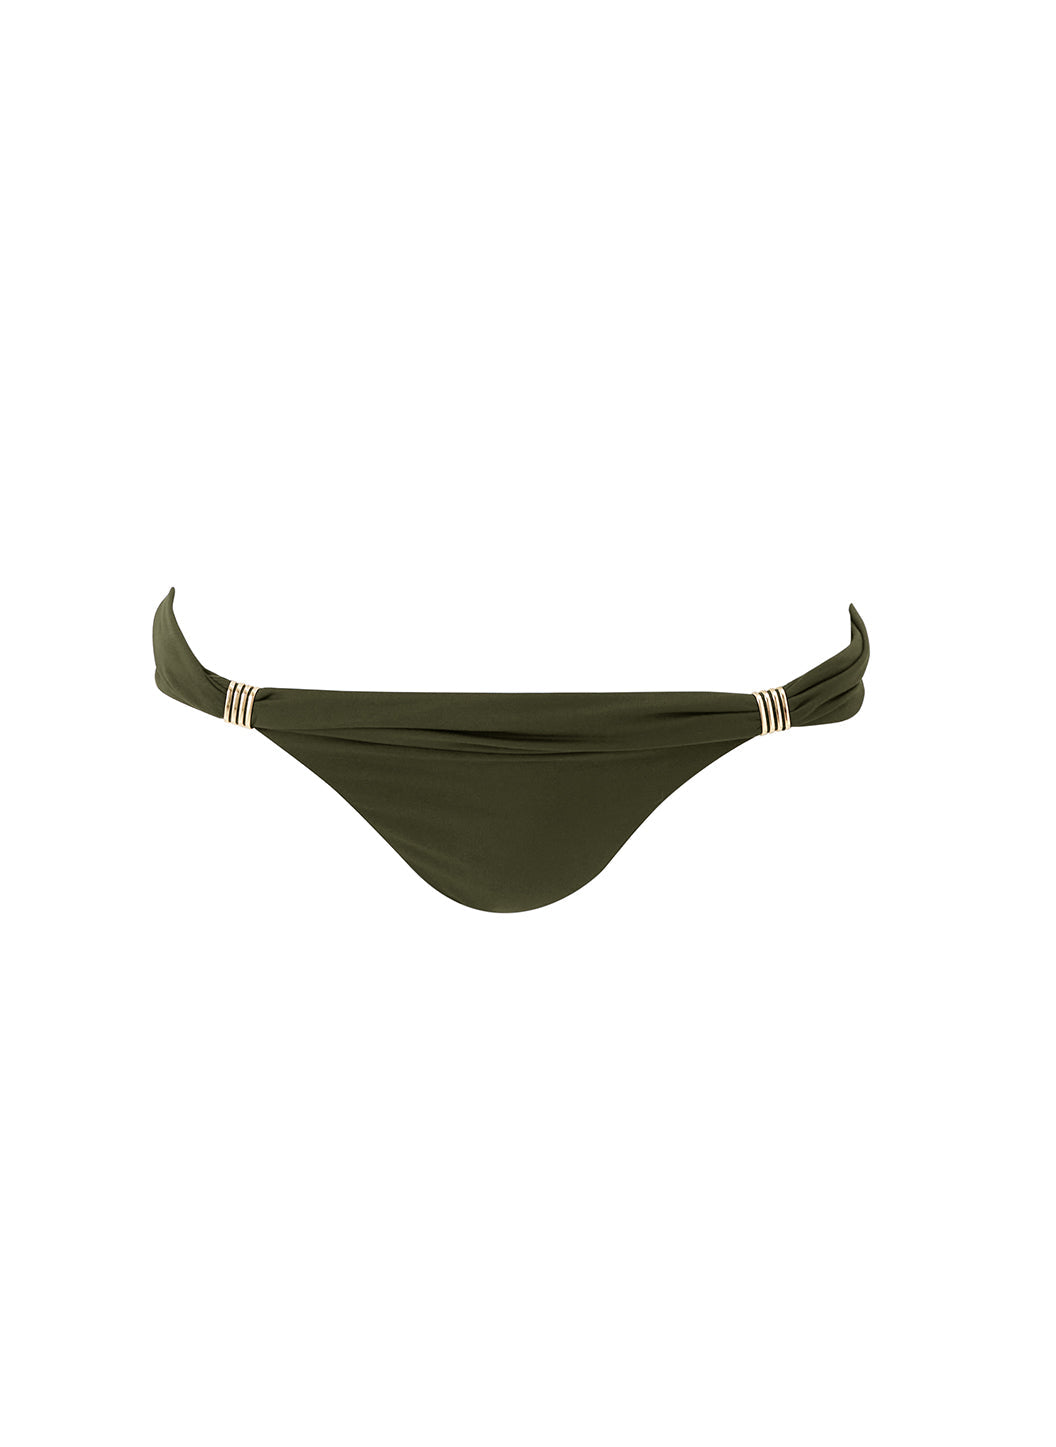 grenada-olive-bikini-bottom_cutouts_2024